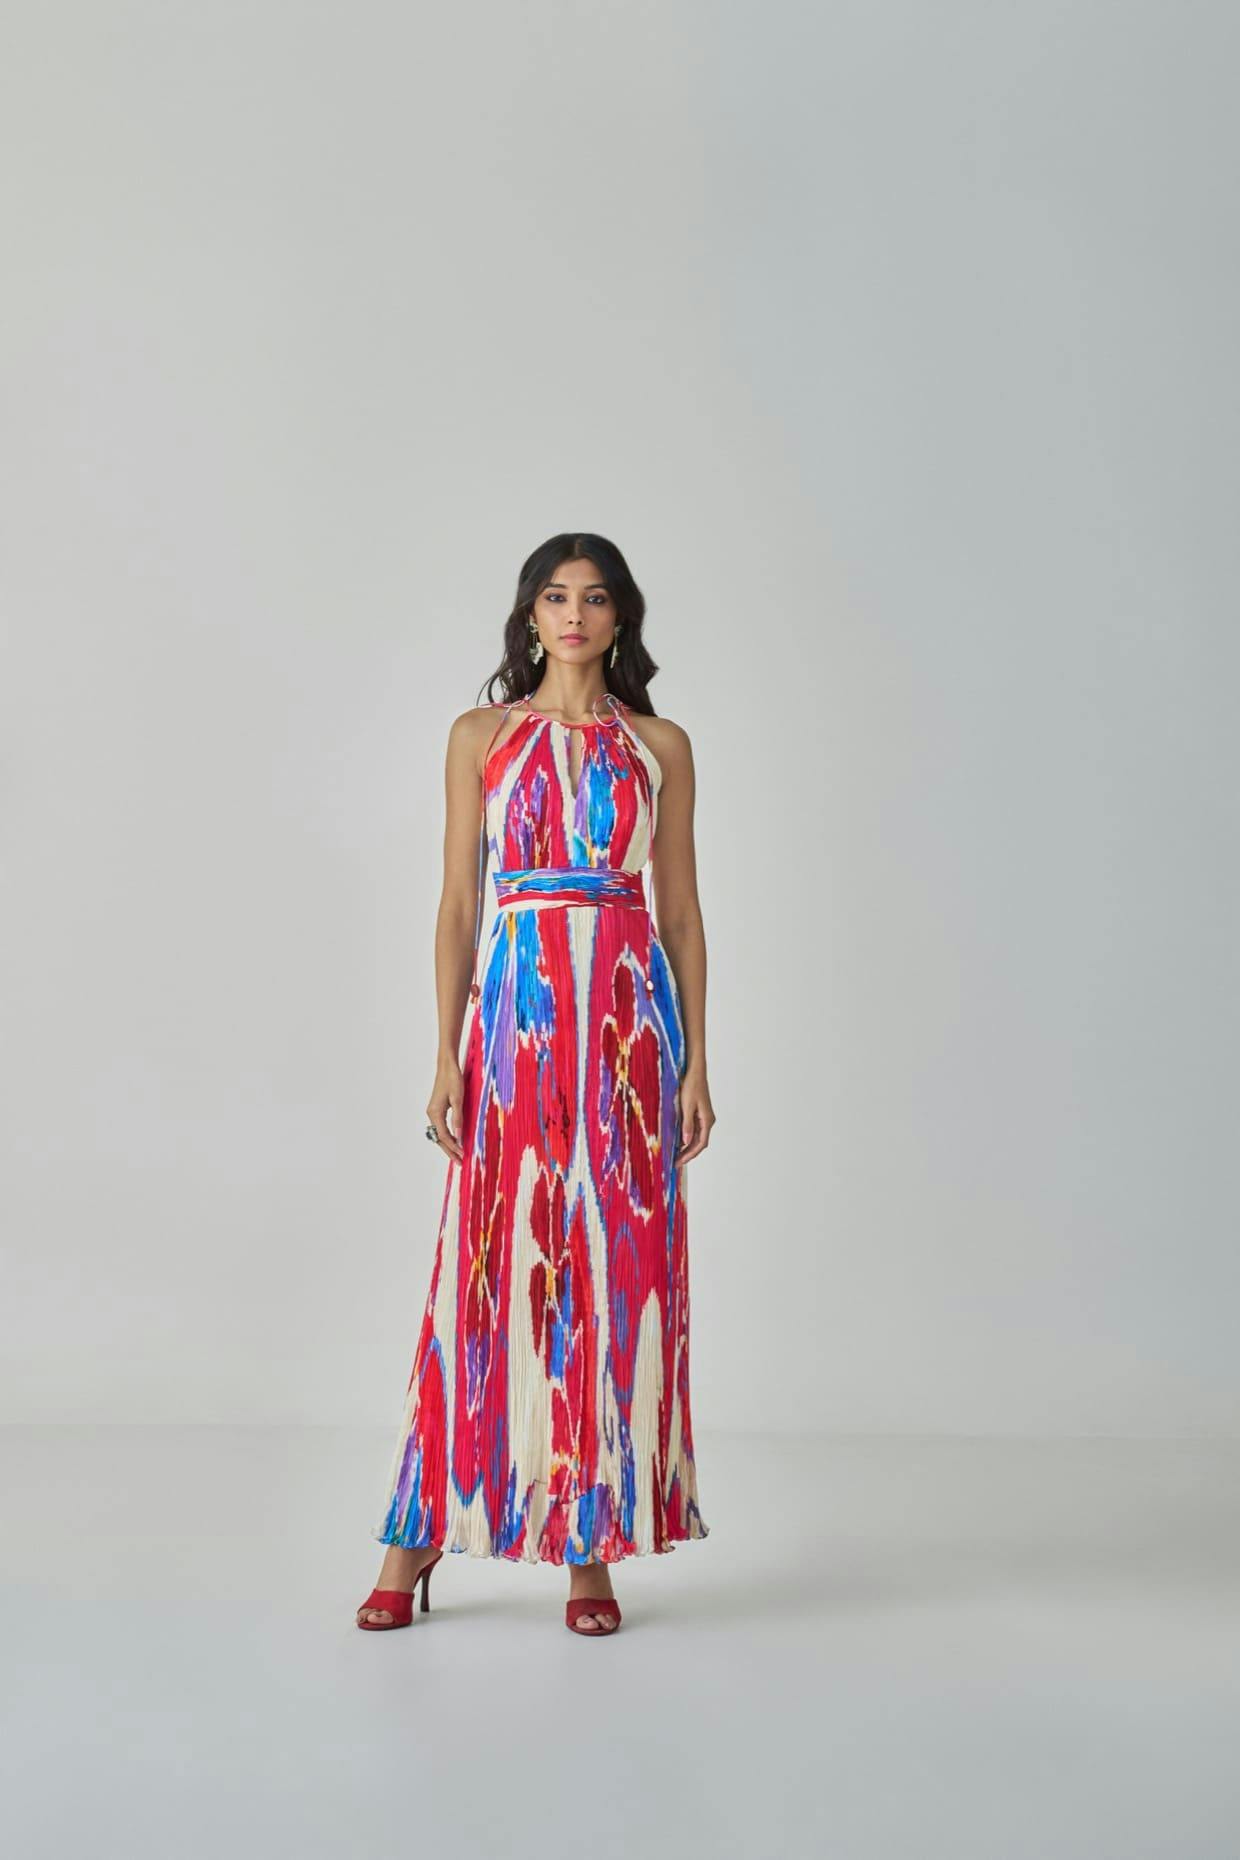 JEWEL DRESS, a product by Saaksha & Kinni 